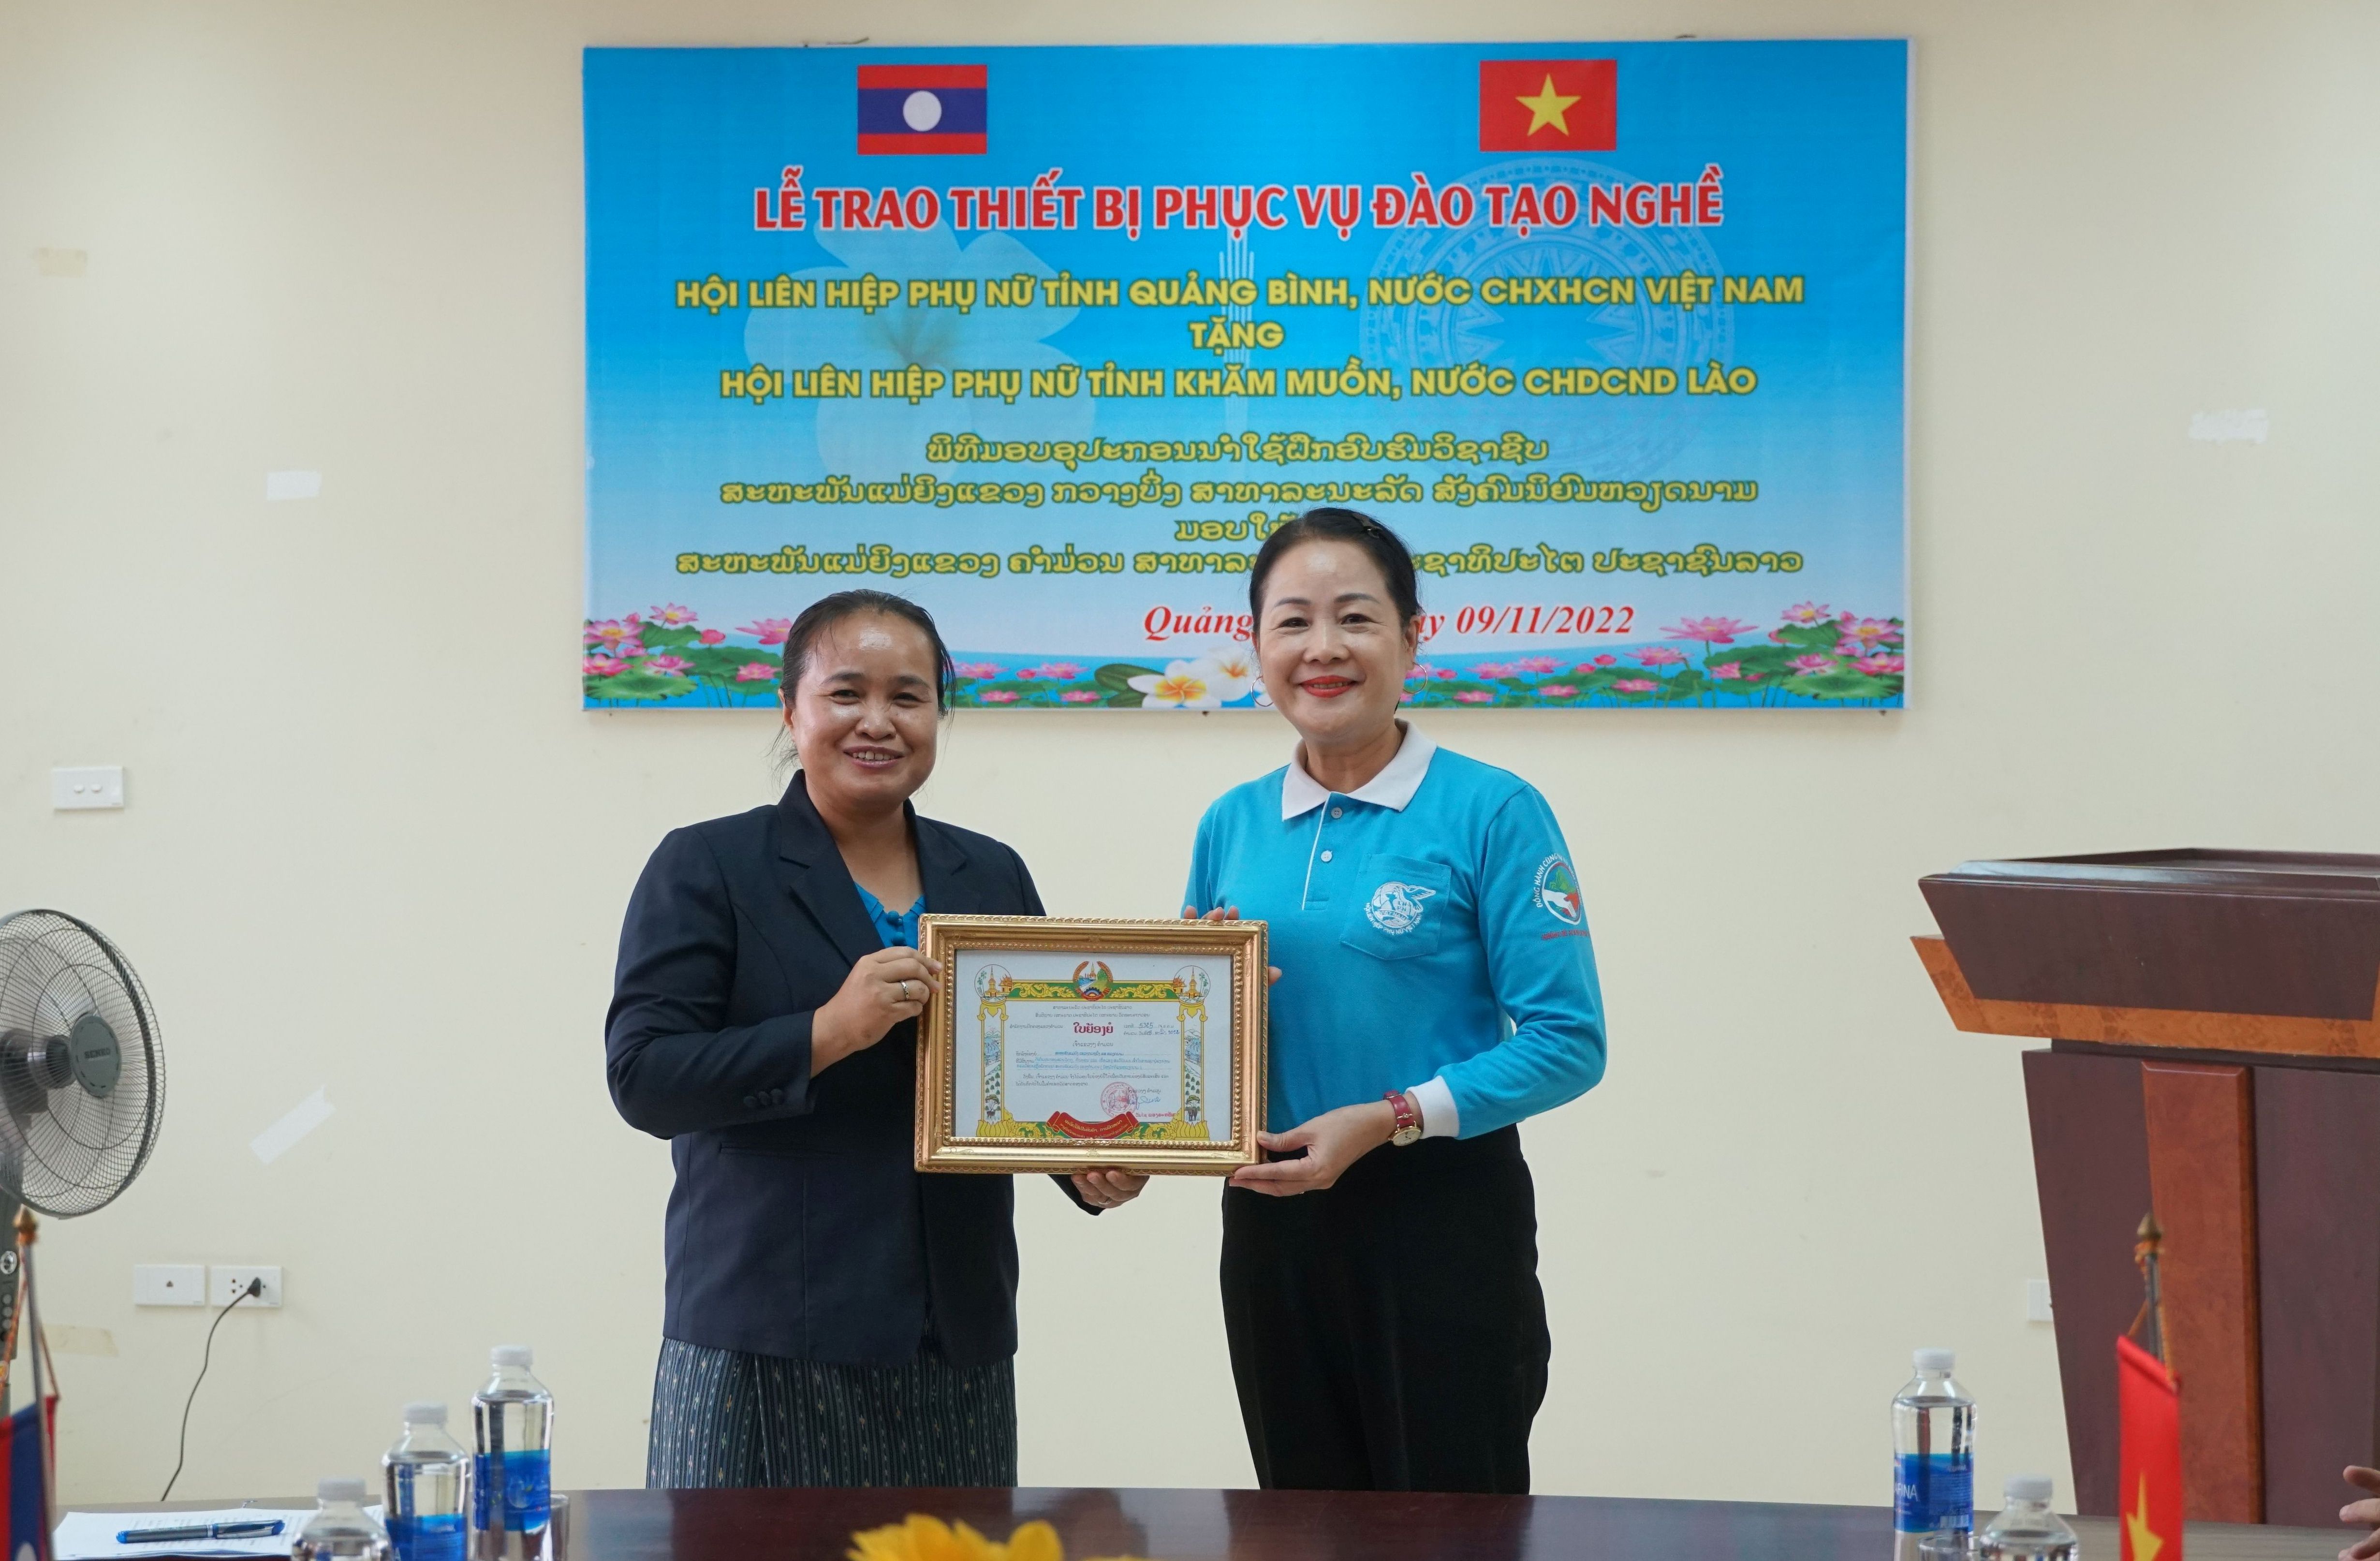 Tỉnh trưởng Khăm Muồn cũng đã tặng bằng khen cho Hội LHPN tỉnh Quảng Bình vì đã có những thành tích xuất sắc trong việc hợp tác, hỗ trợ, giúp đỡ Hội LHPN tỉnh Khăm Muồn.